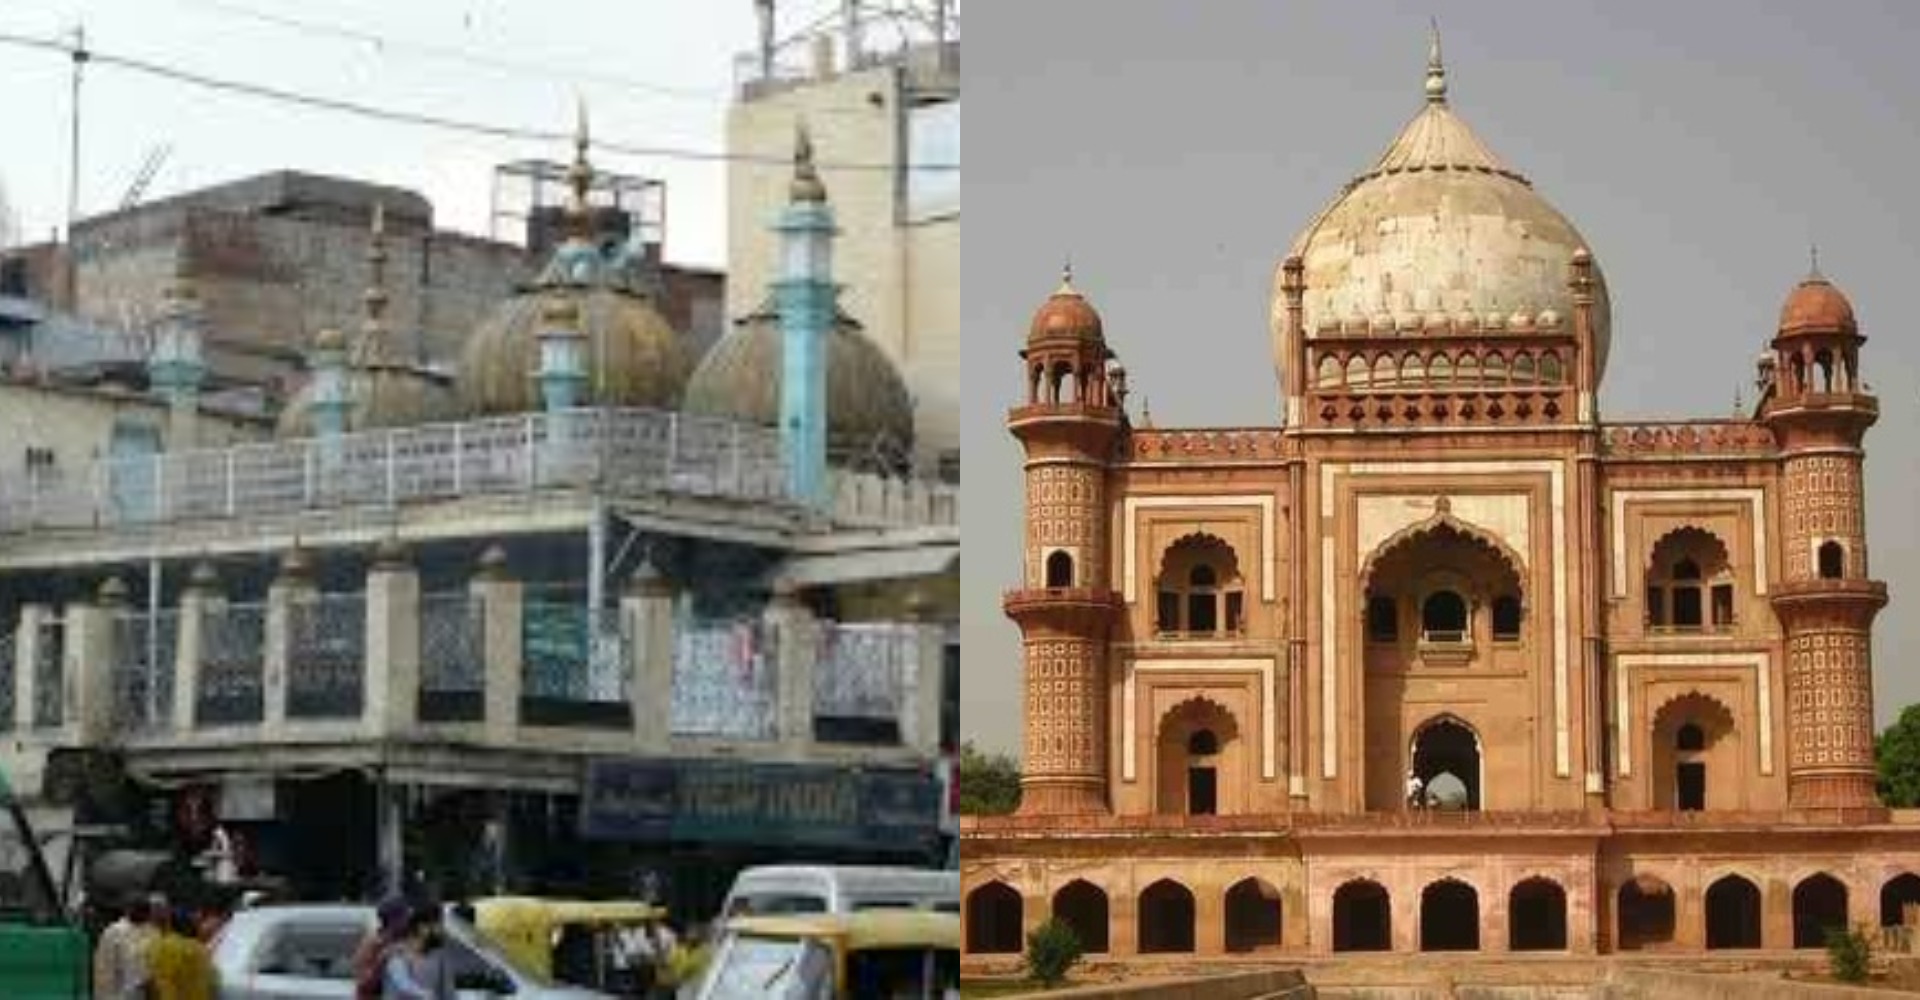 Unlock 1: लंबे समय से लॉकडाउन के बाद दिल्ली में आज से 10 ऐतिहासिक मस्जिदें और मकबरे खुल गए जहा होती है इबादत